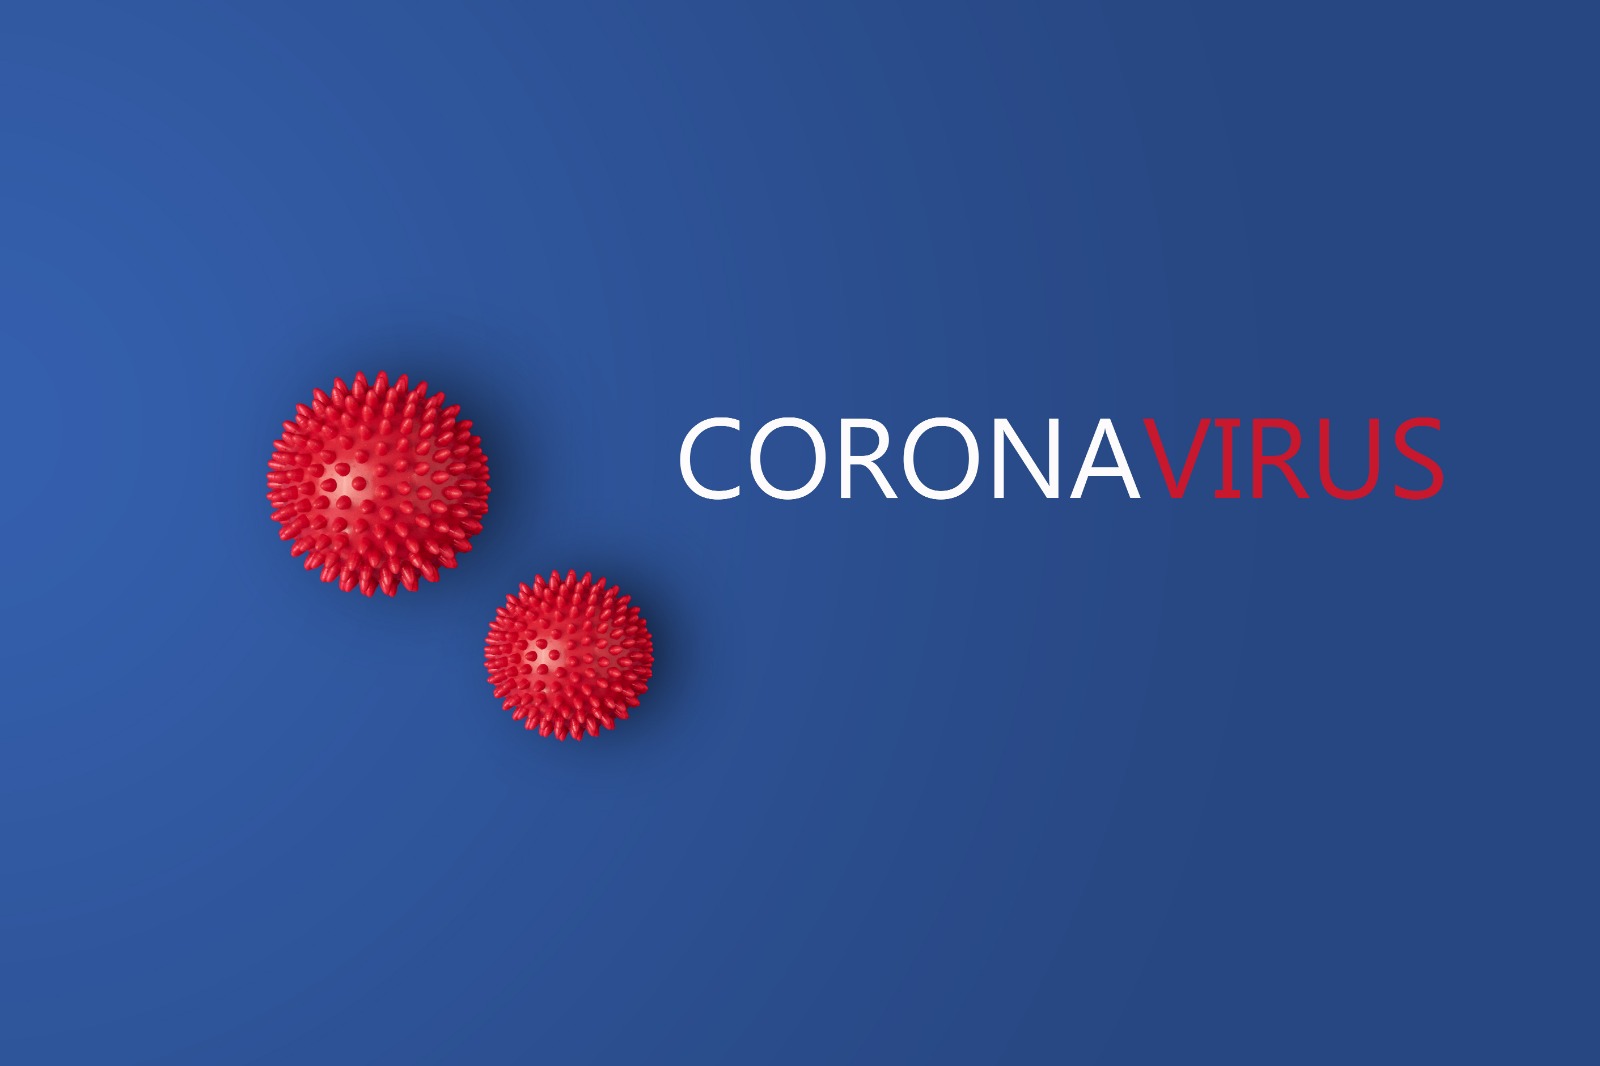 koronaviruse karsi bagisiklik sisteminizi guclendirin